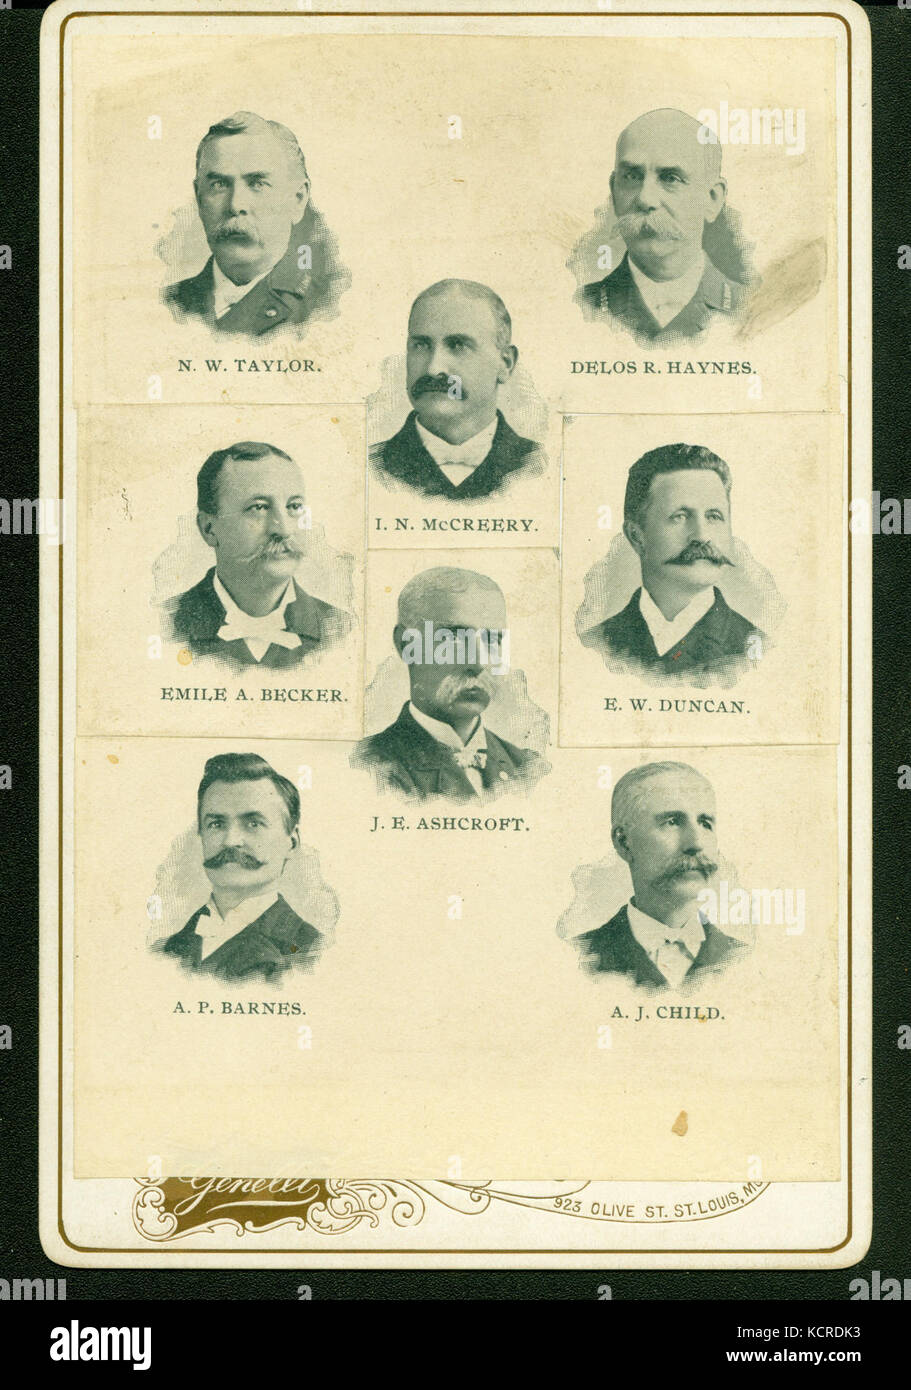 Gruppo composito (compresi da in alto a sinistra) N. W. Taylor, I. N. McCreery, Delos R. Haynes, Emile A. Becker, J. E. Ashcroft, E. W. Duncan, A. P. BARNES, E A. J. bambino. (Unione veterani) Foto Stock